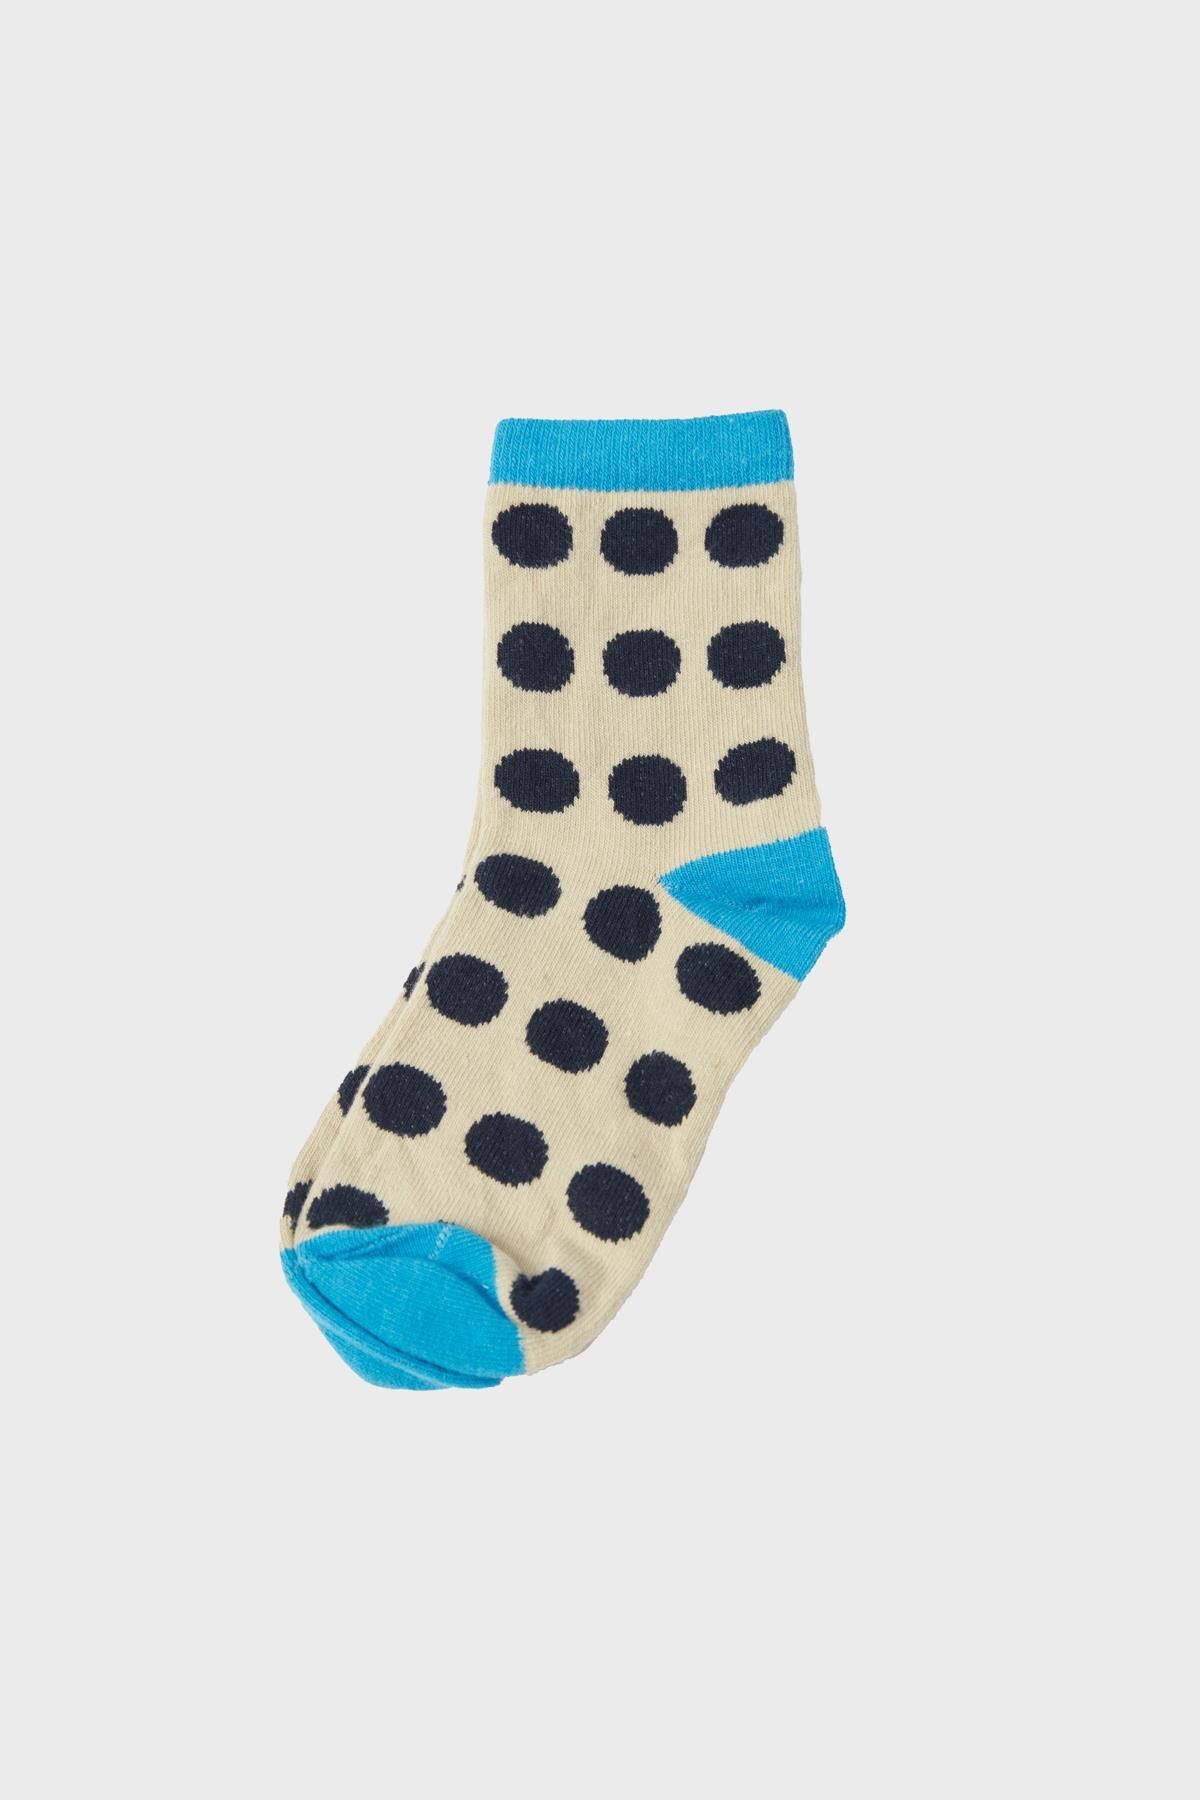 Nebbati BG Store Erkek Çocuk Desenli Çorap